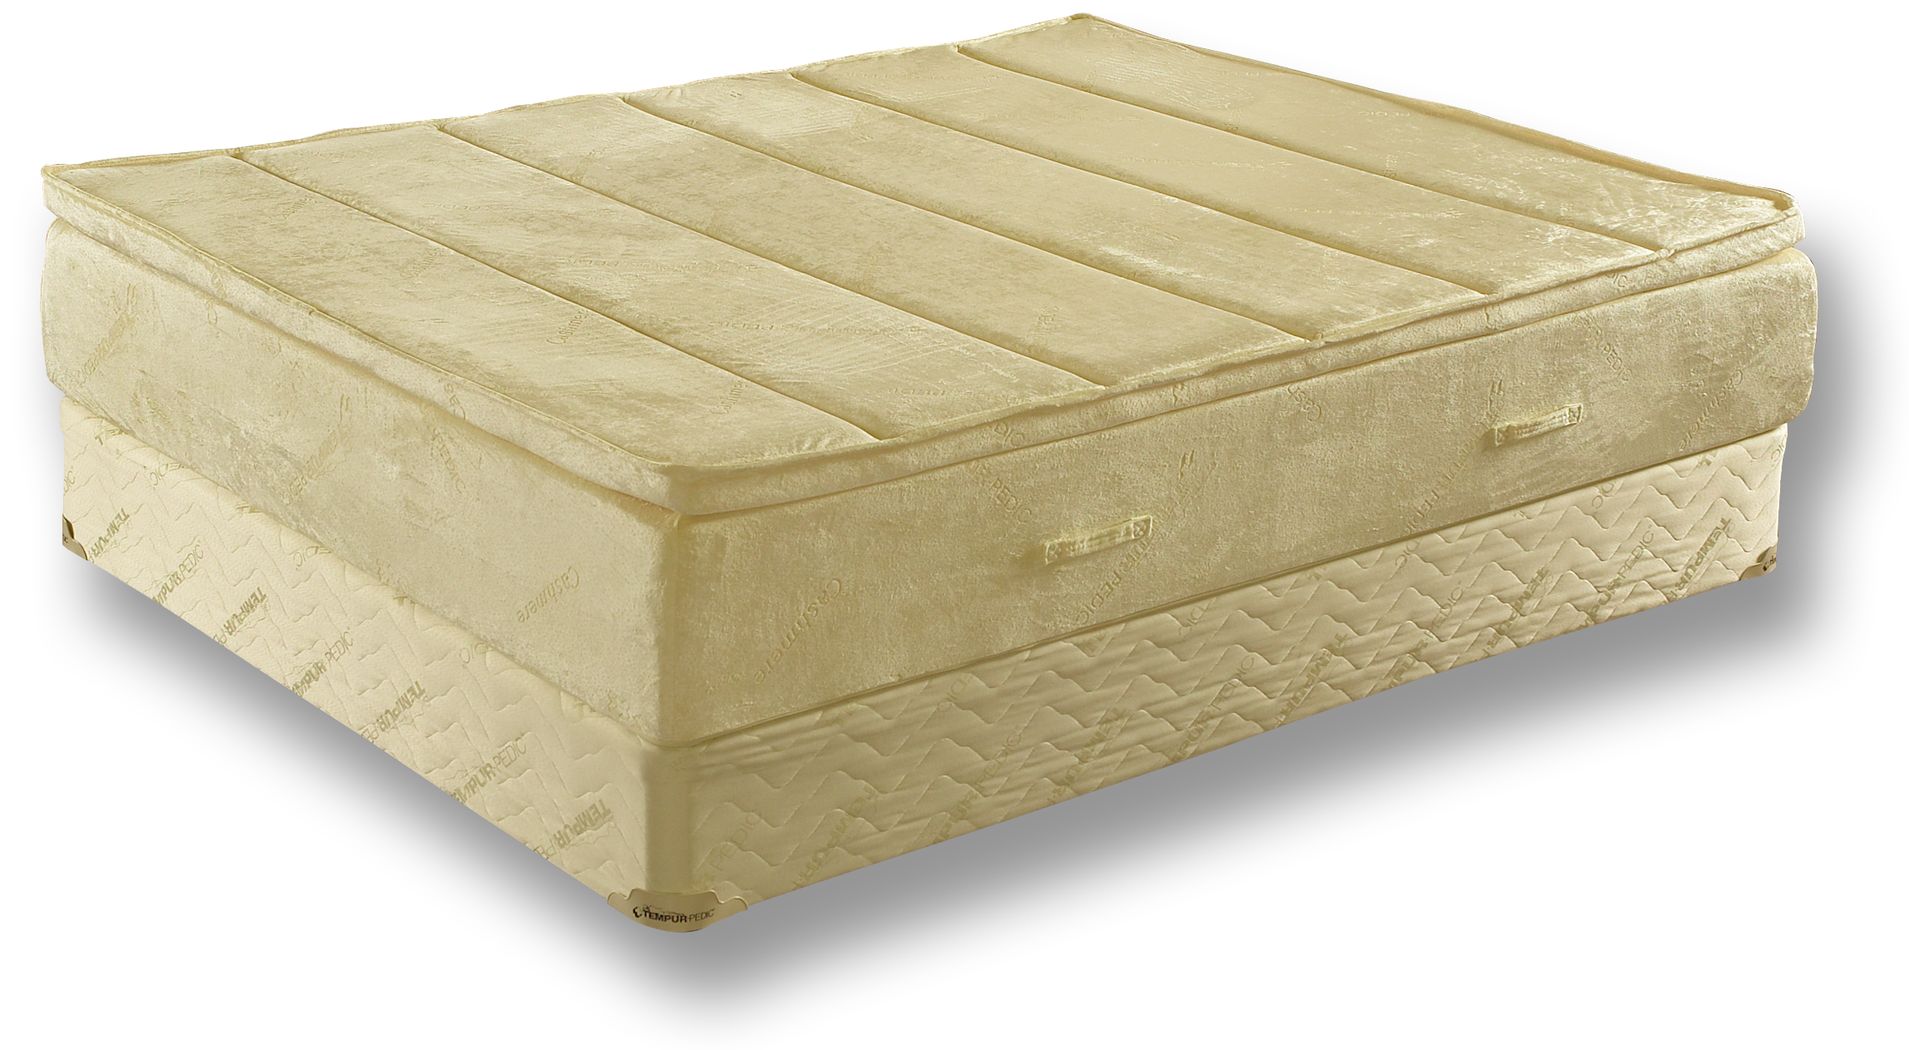 tempur celebrity mattress review